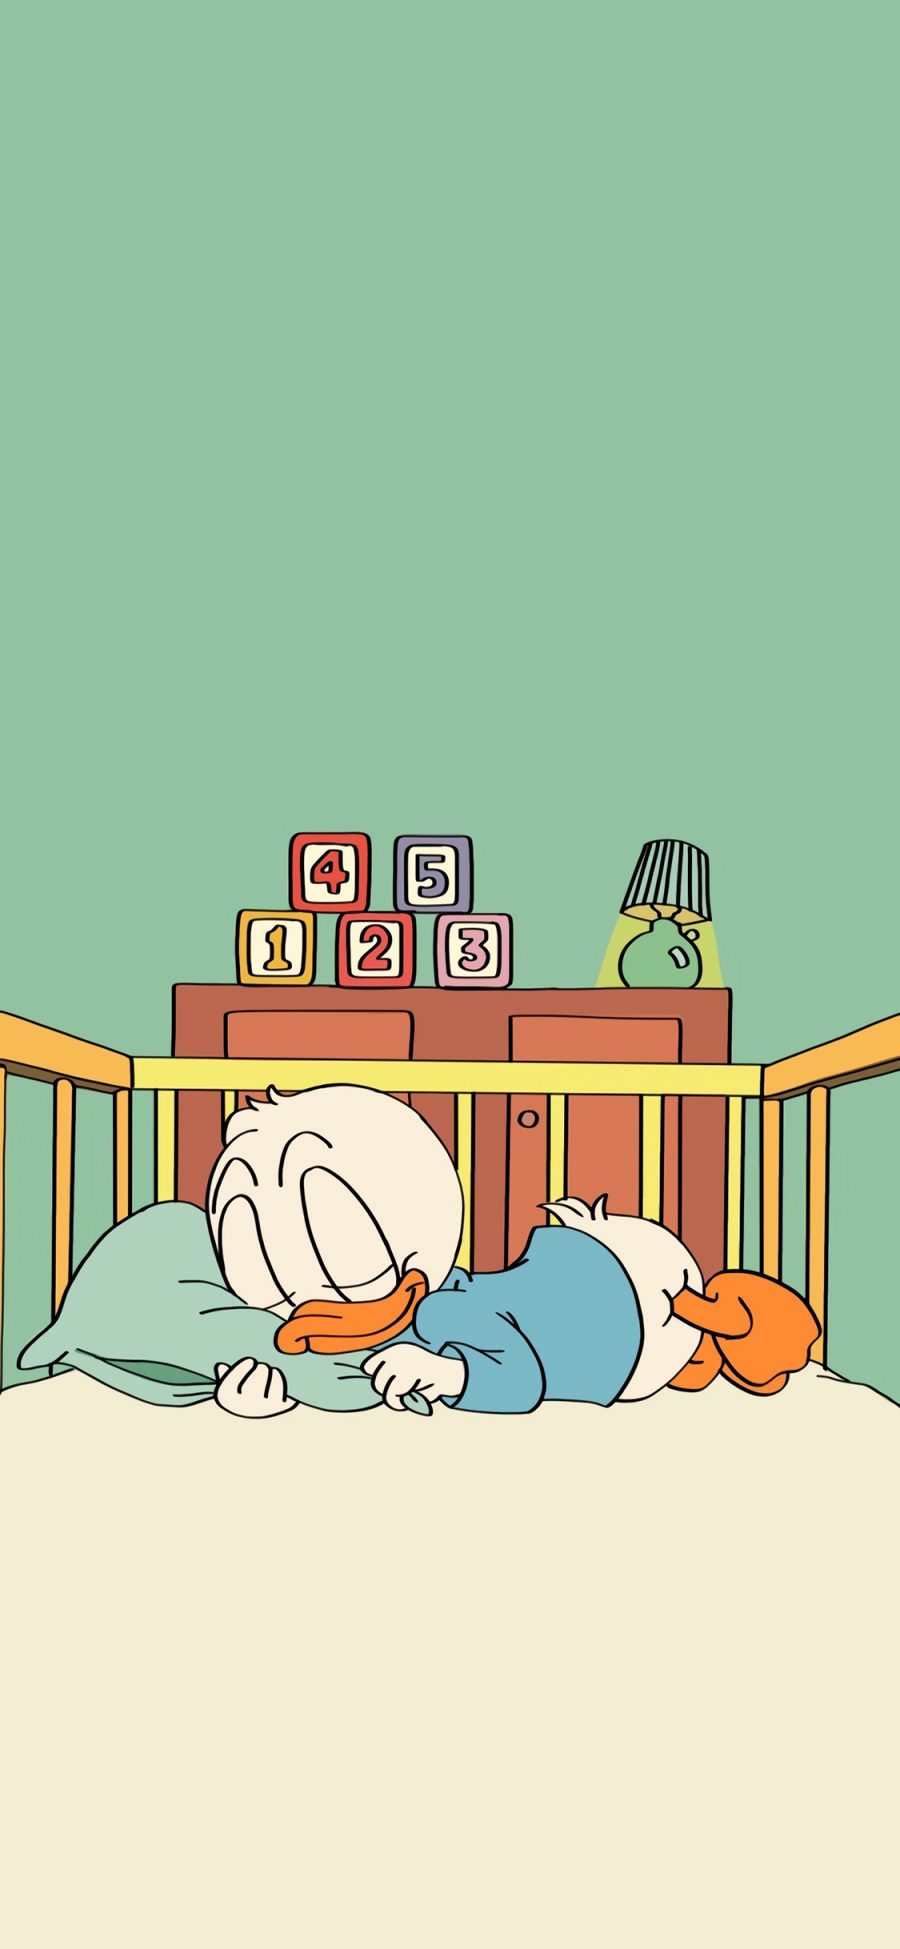 [2436×1125]鸭子 睡觉 卡通 数字 床 枕头 苹果手机动漫壁纸图片